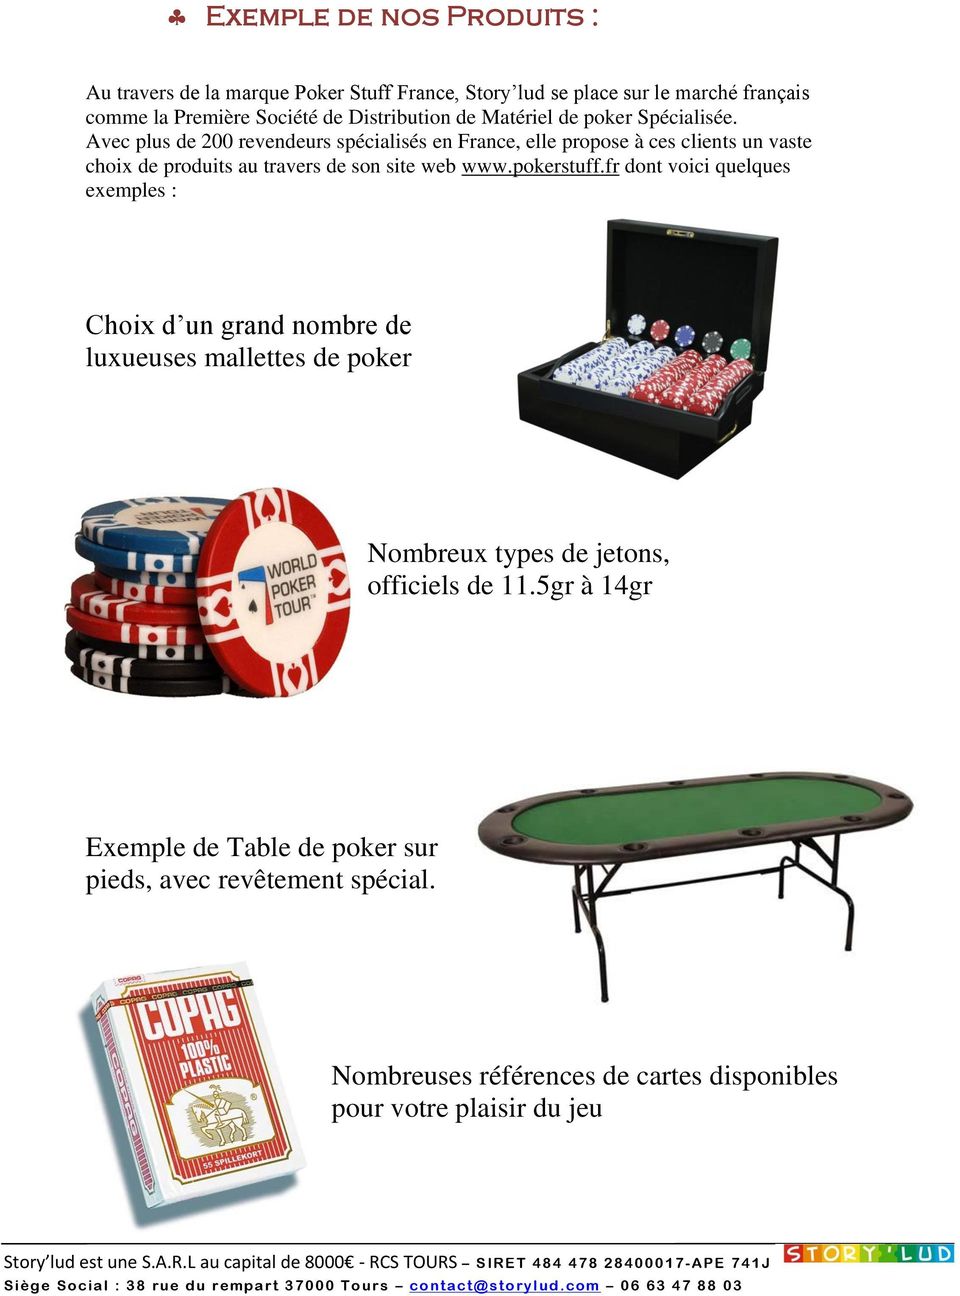 Avec plus de 200 revendeurs spécialisés en France, elle propose à ces clients un vaste choix de produits au travers de son site web www.pokerstuff.